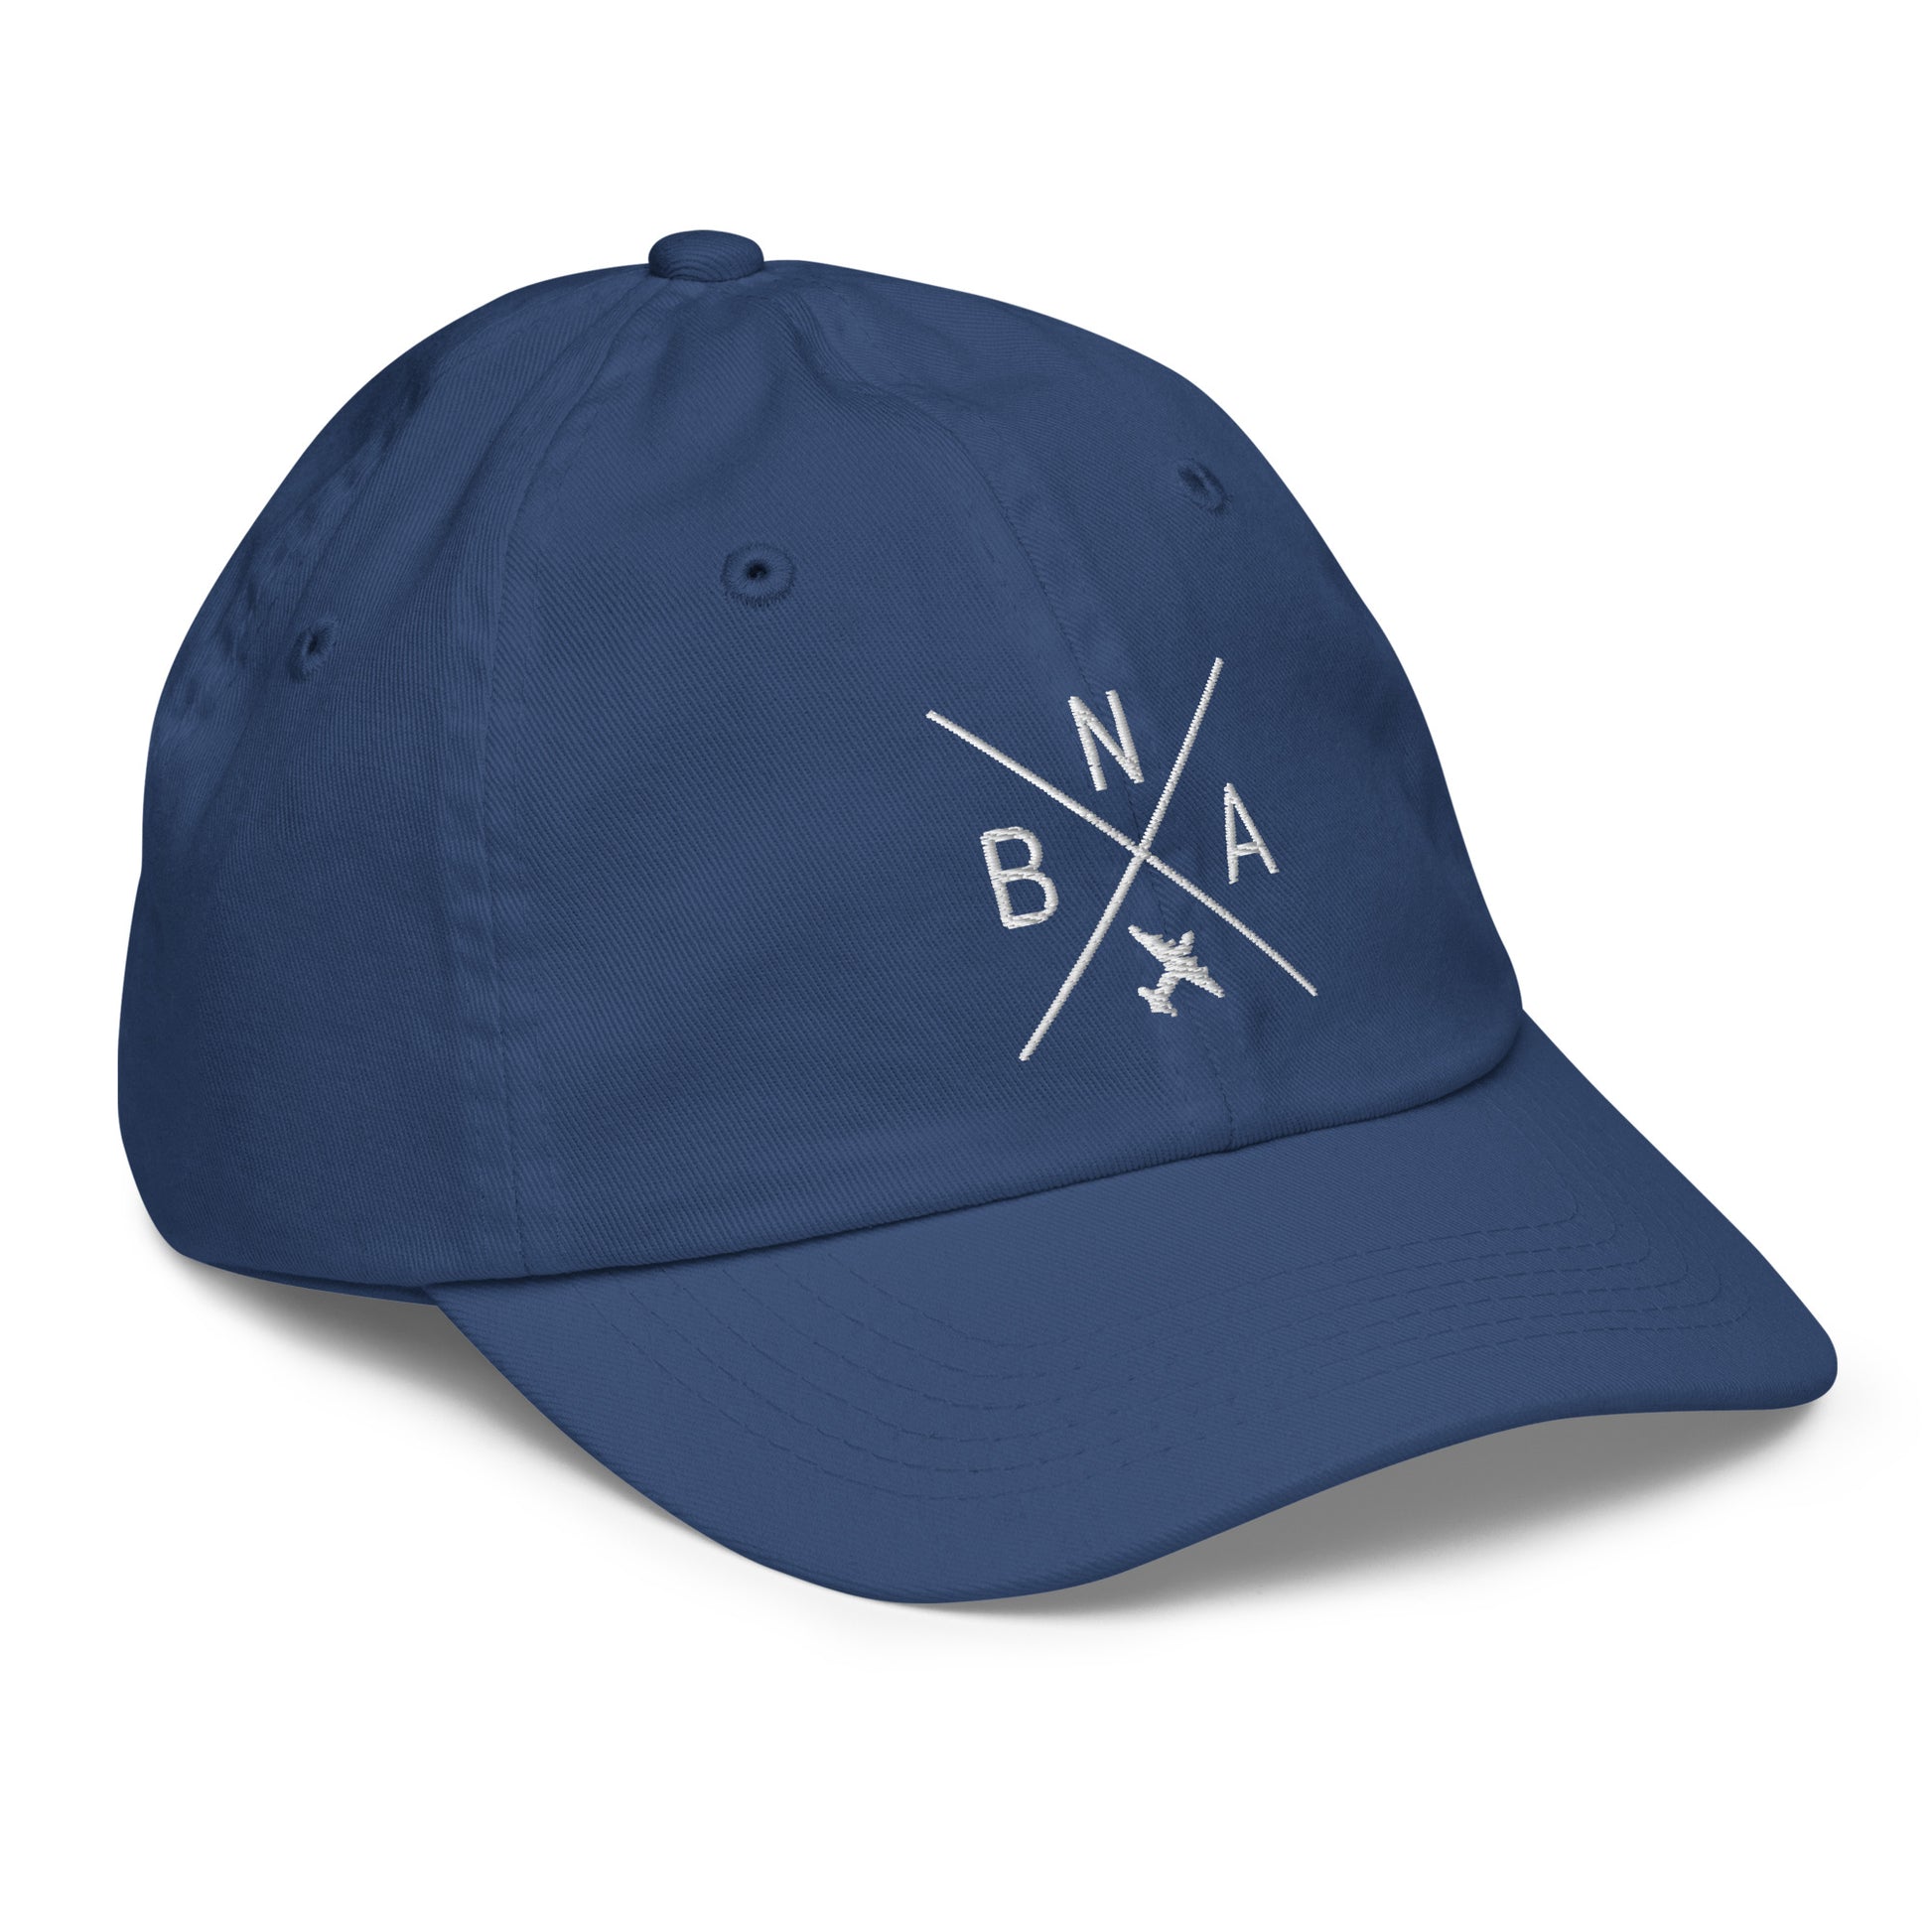 Crossed-X Kid's Baseball Cap - White • BNA Nashville • YHM Designs - Image 20